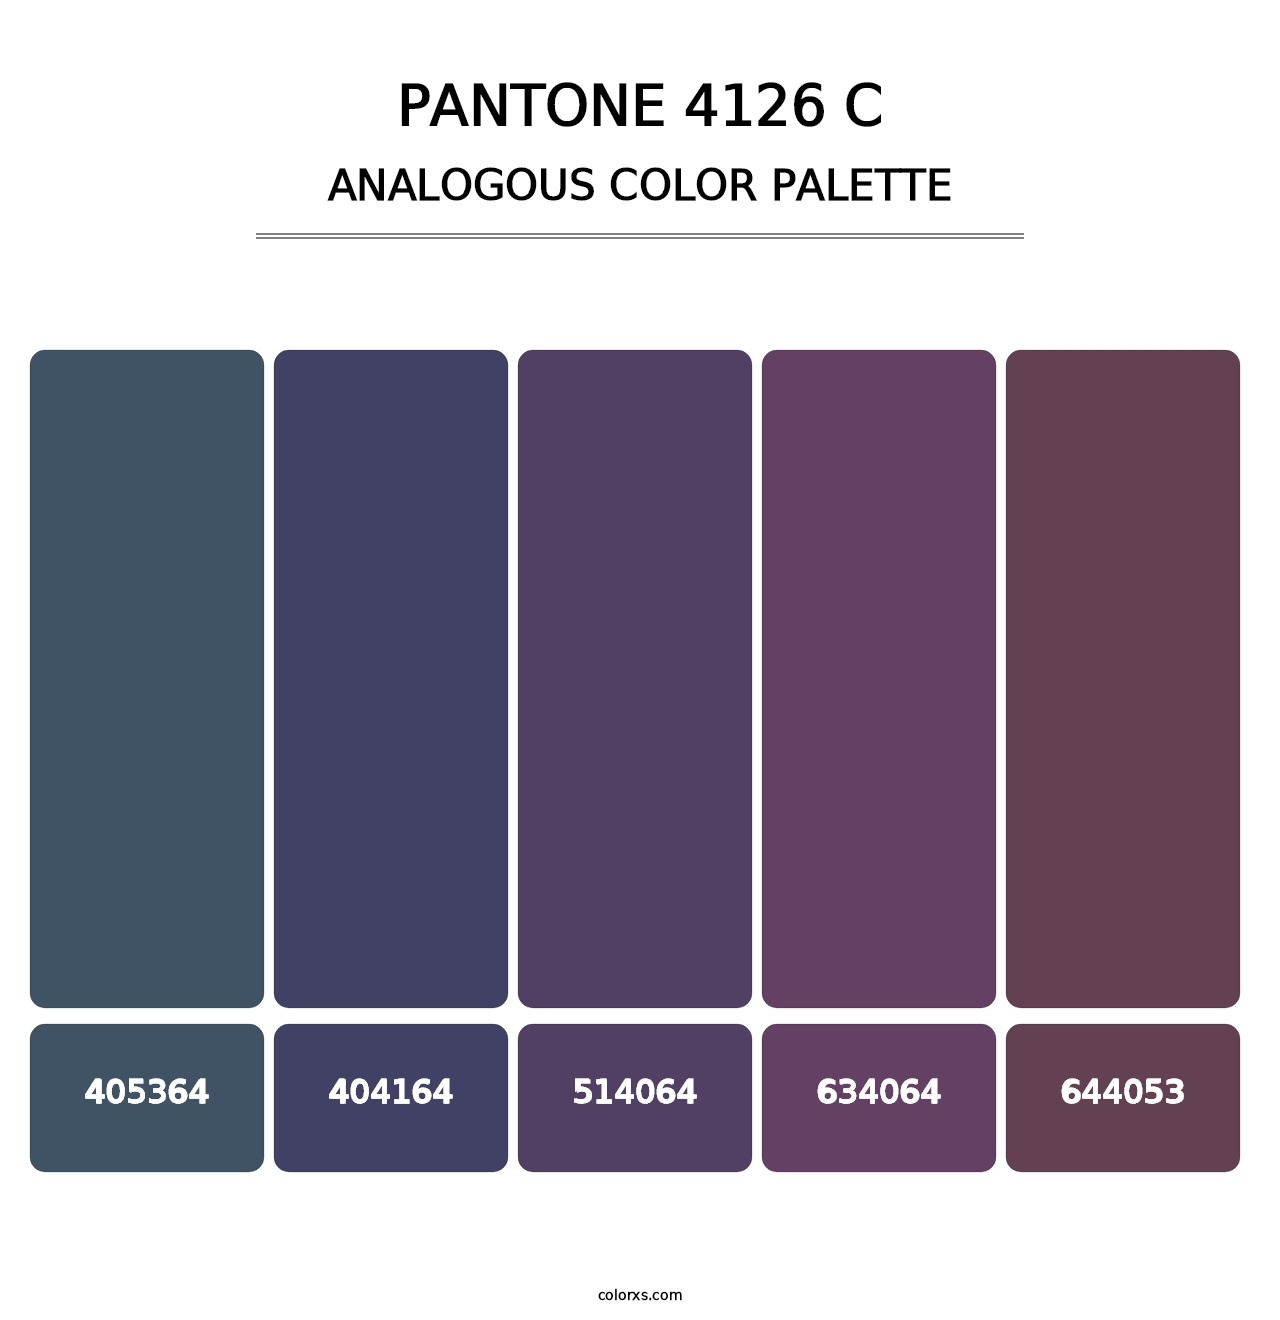 PANTONE 4126 C - Analogous Color Palette